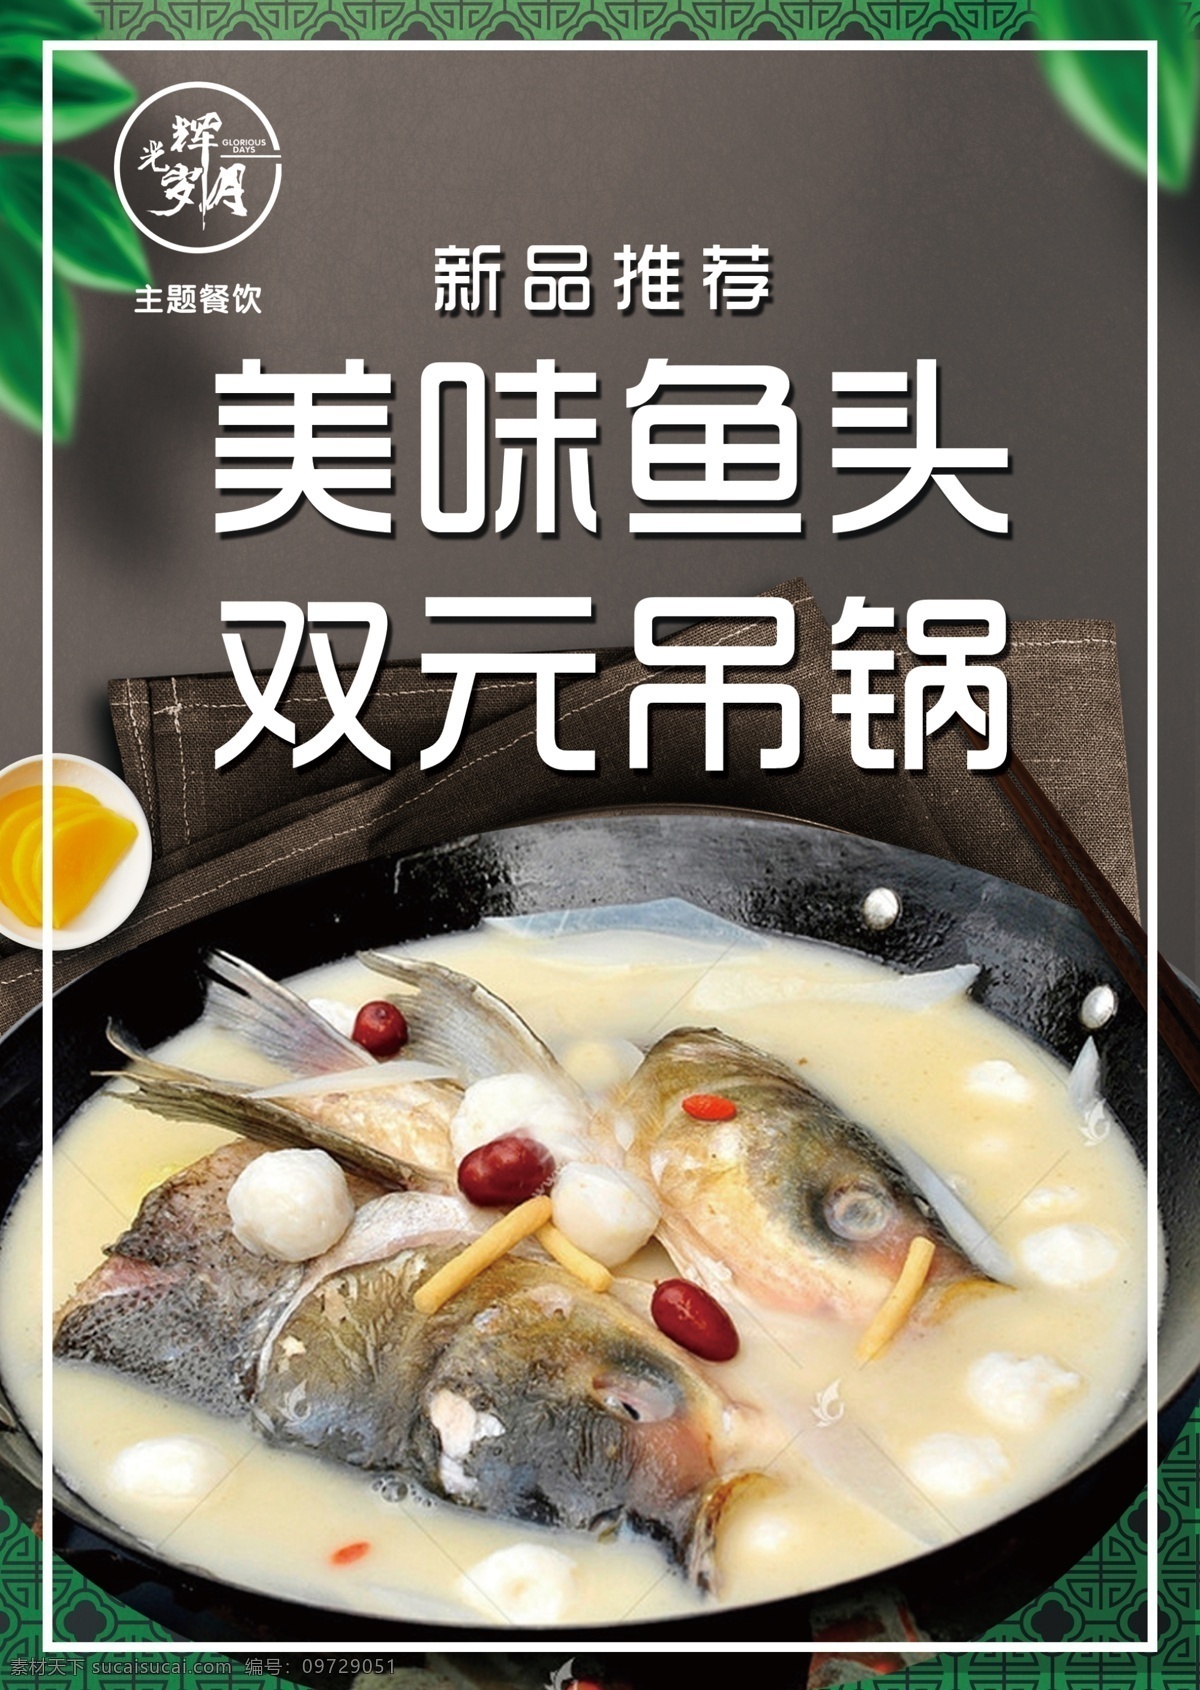 鱼头吊锅 美食海报图片 新菜品 餐饮海报 鱼头火锅 美食海报